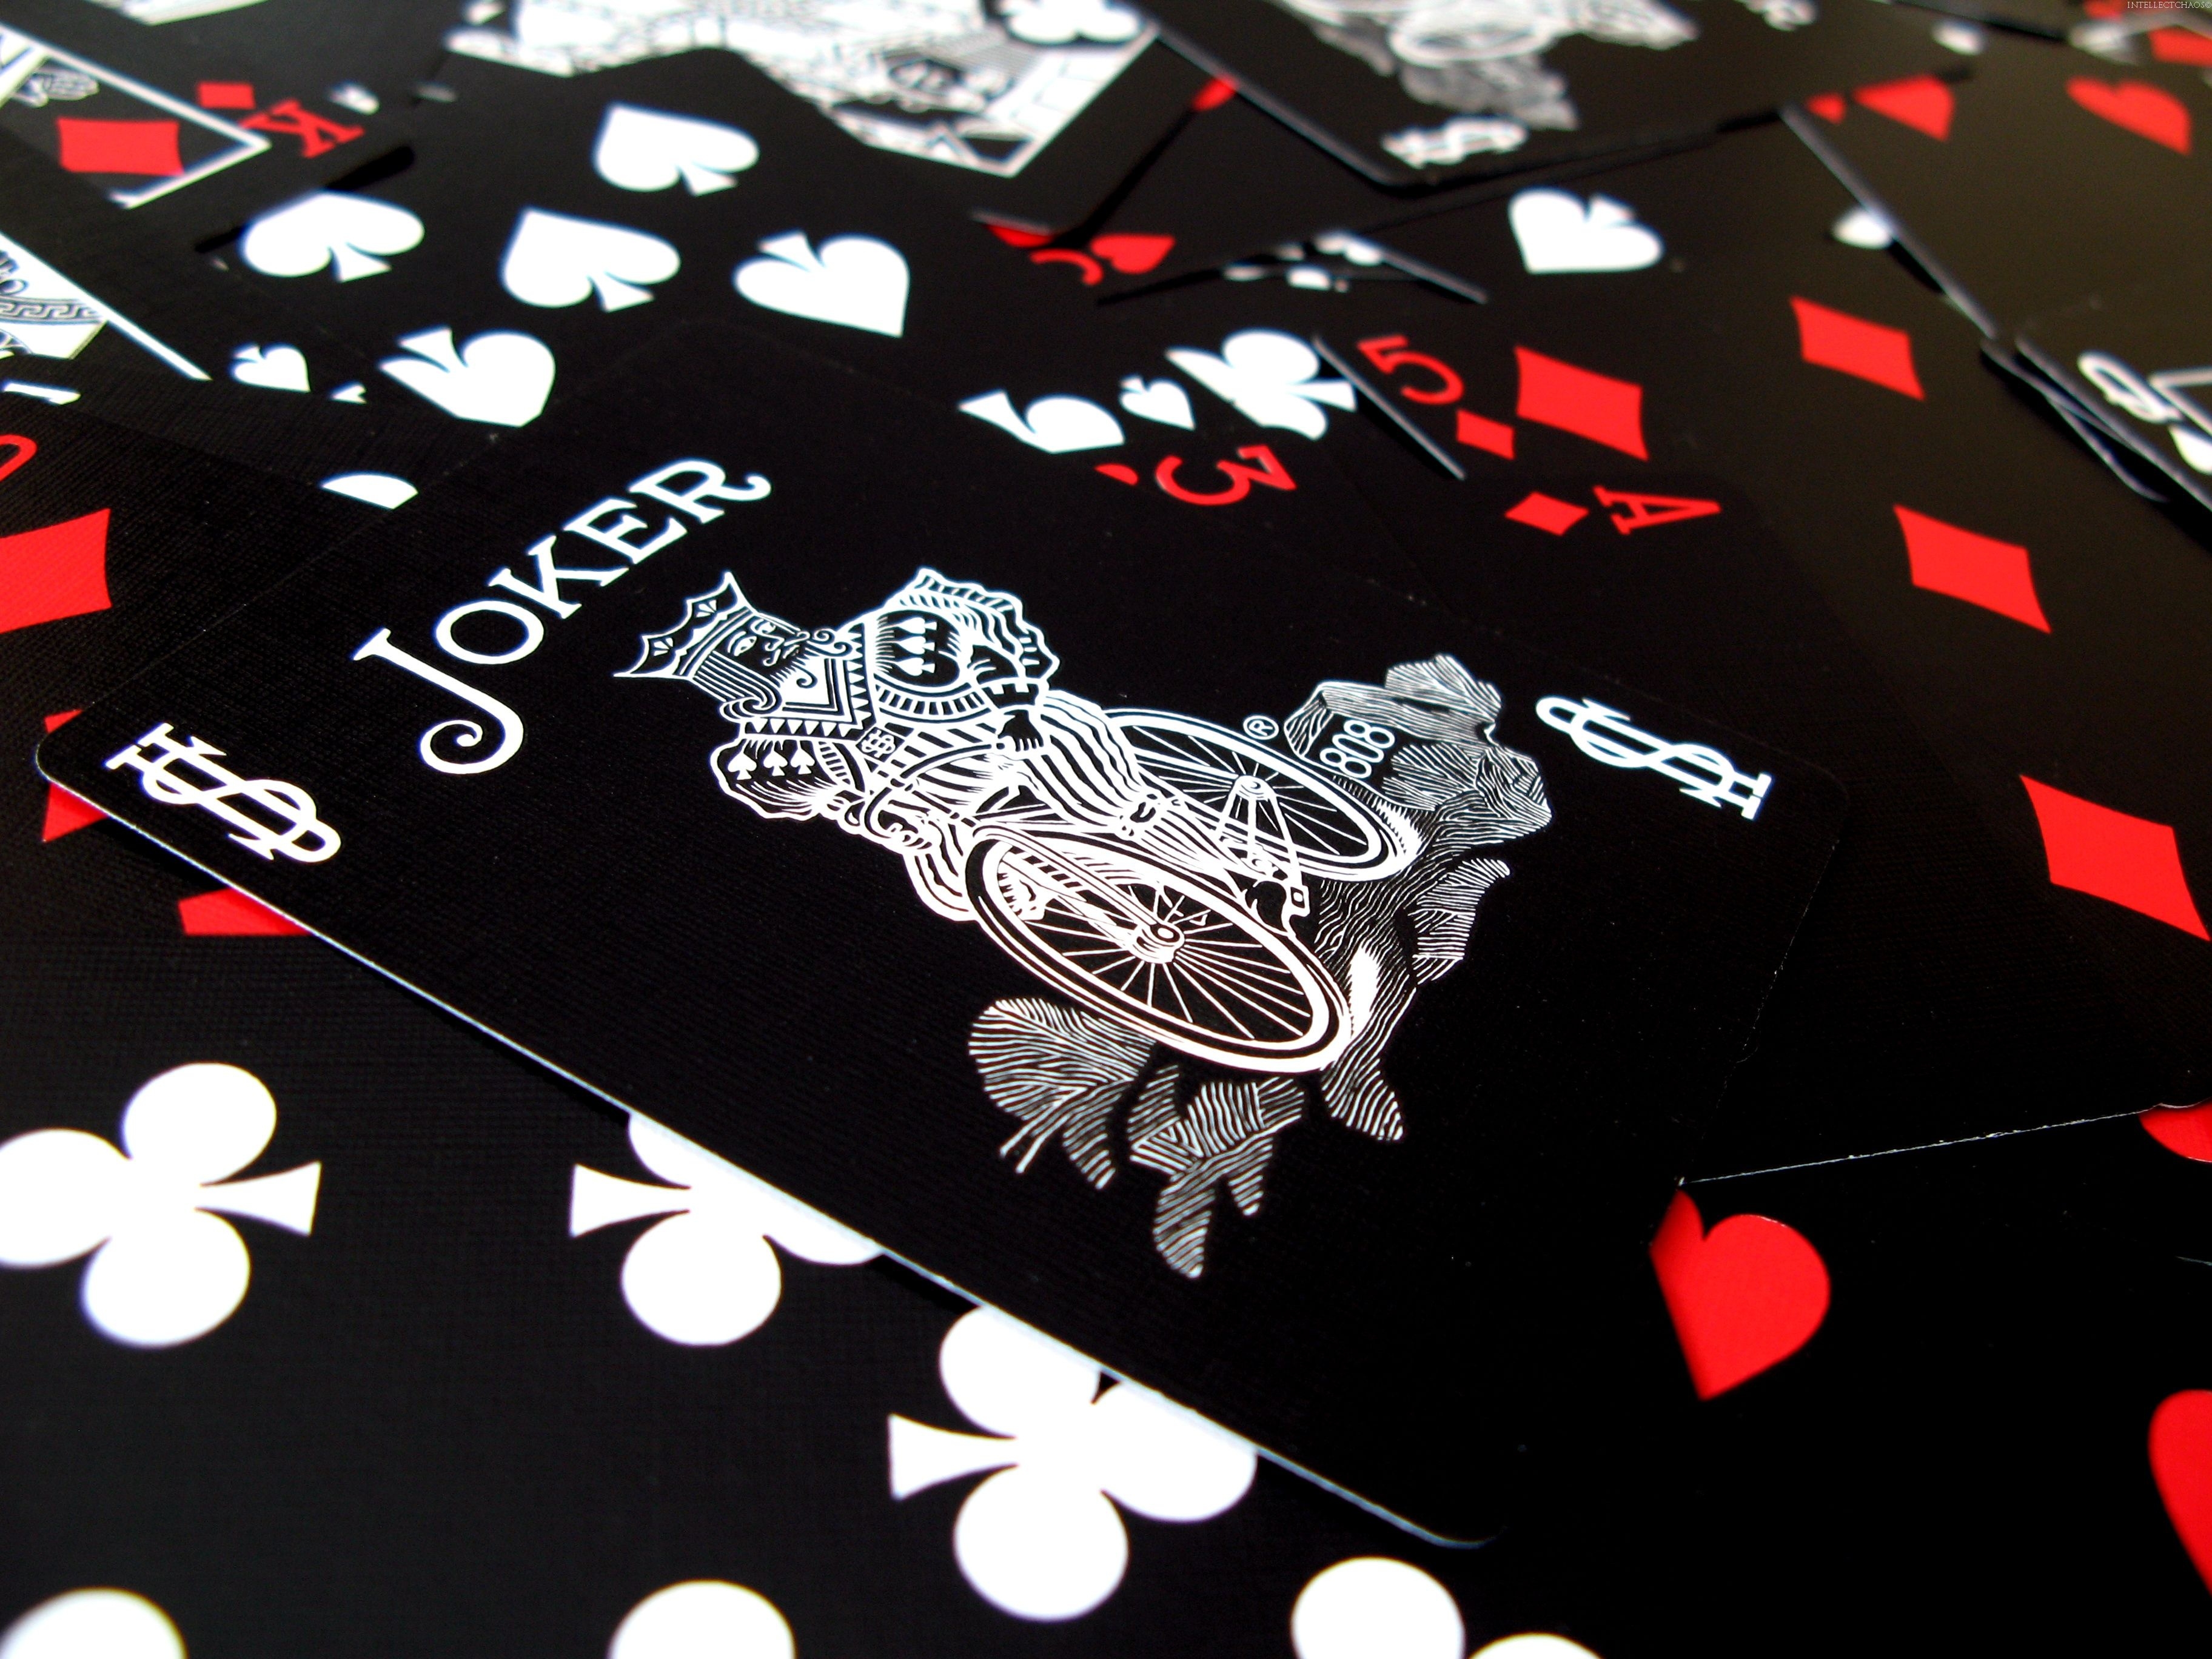 Бесплатное фото Джокерная карта черного цвета